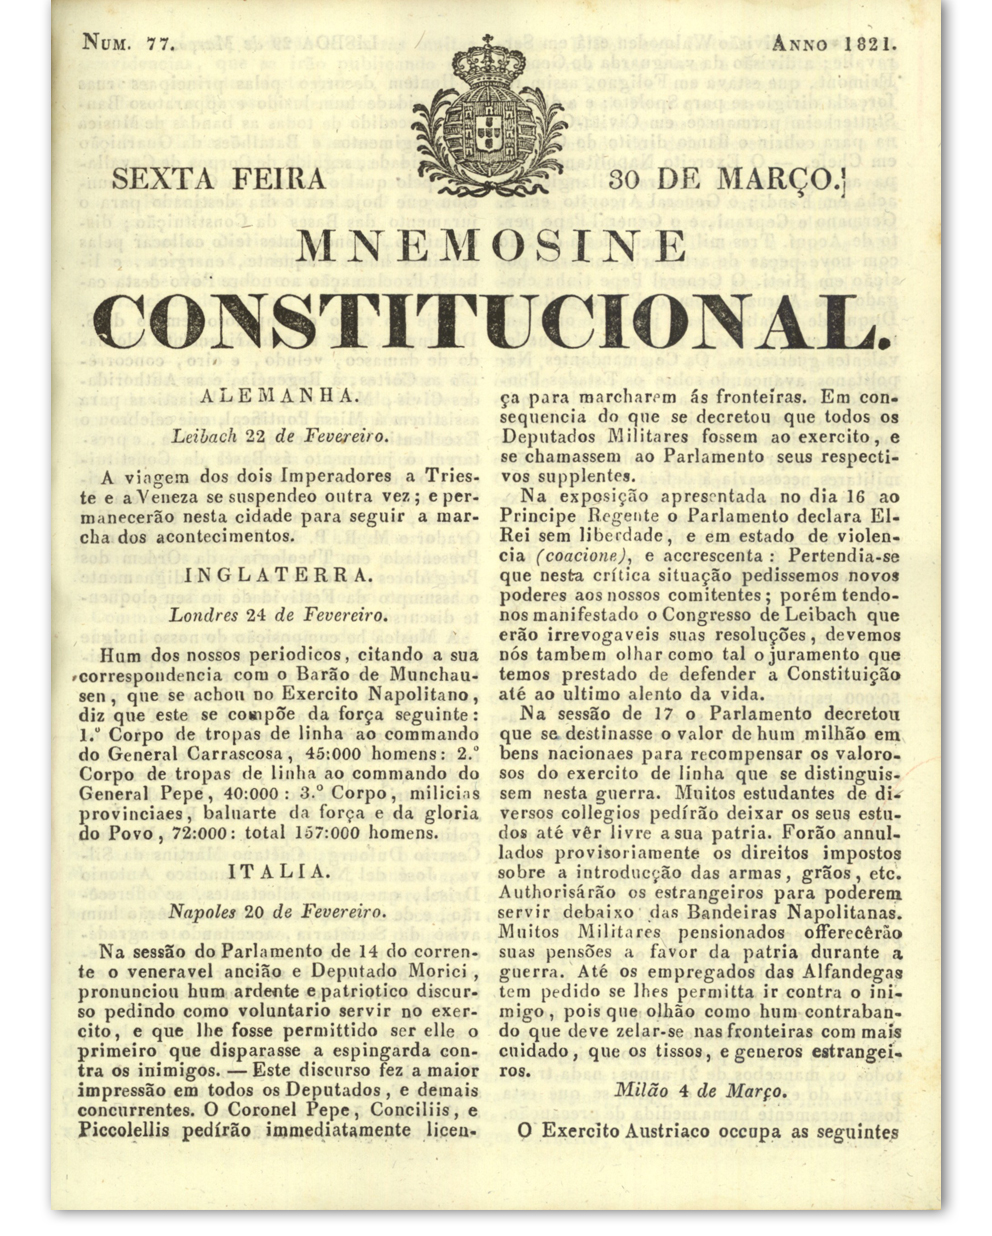  [Descrição dos festejos por ocasião da aprovação das Bases da Constituição]. Mnemosine Constitucional. Lisboa: Imprensa Nacional, 30 março 1821, p. 2-3. Cota: APP-638